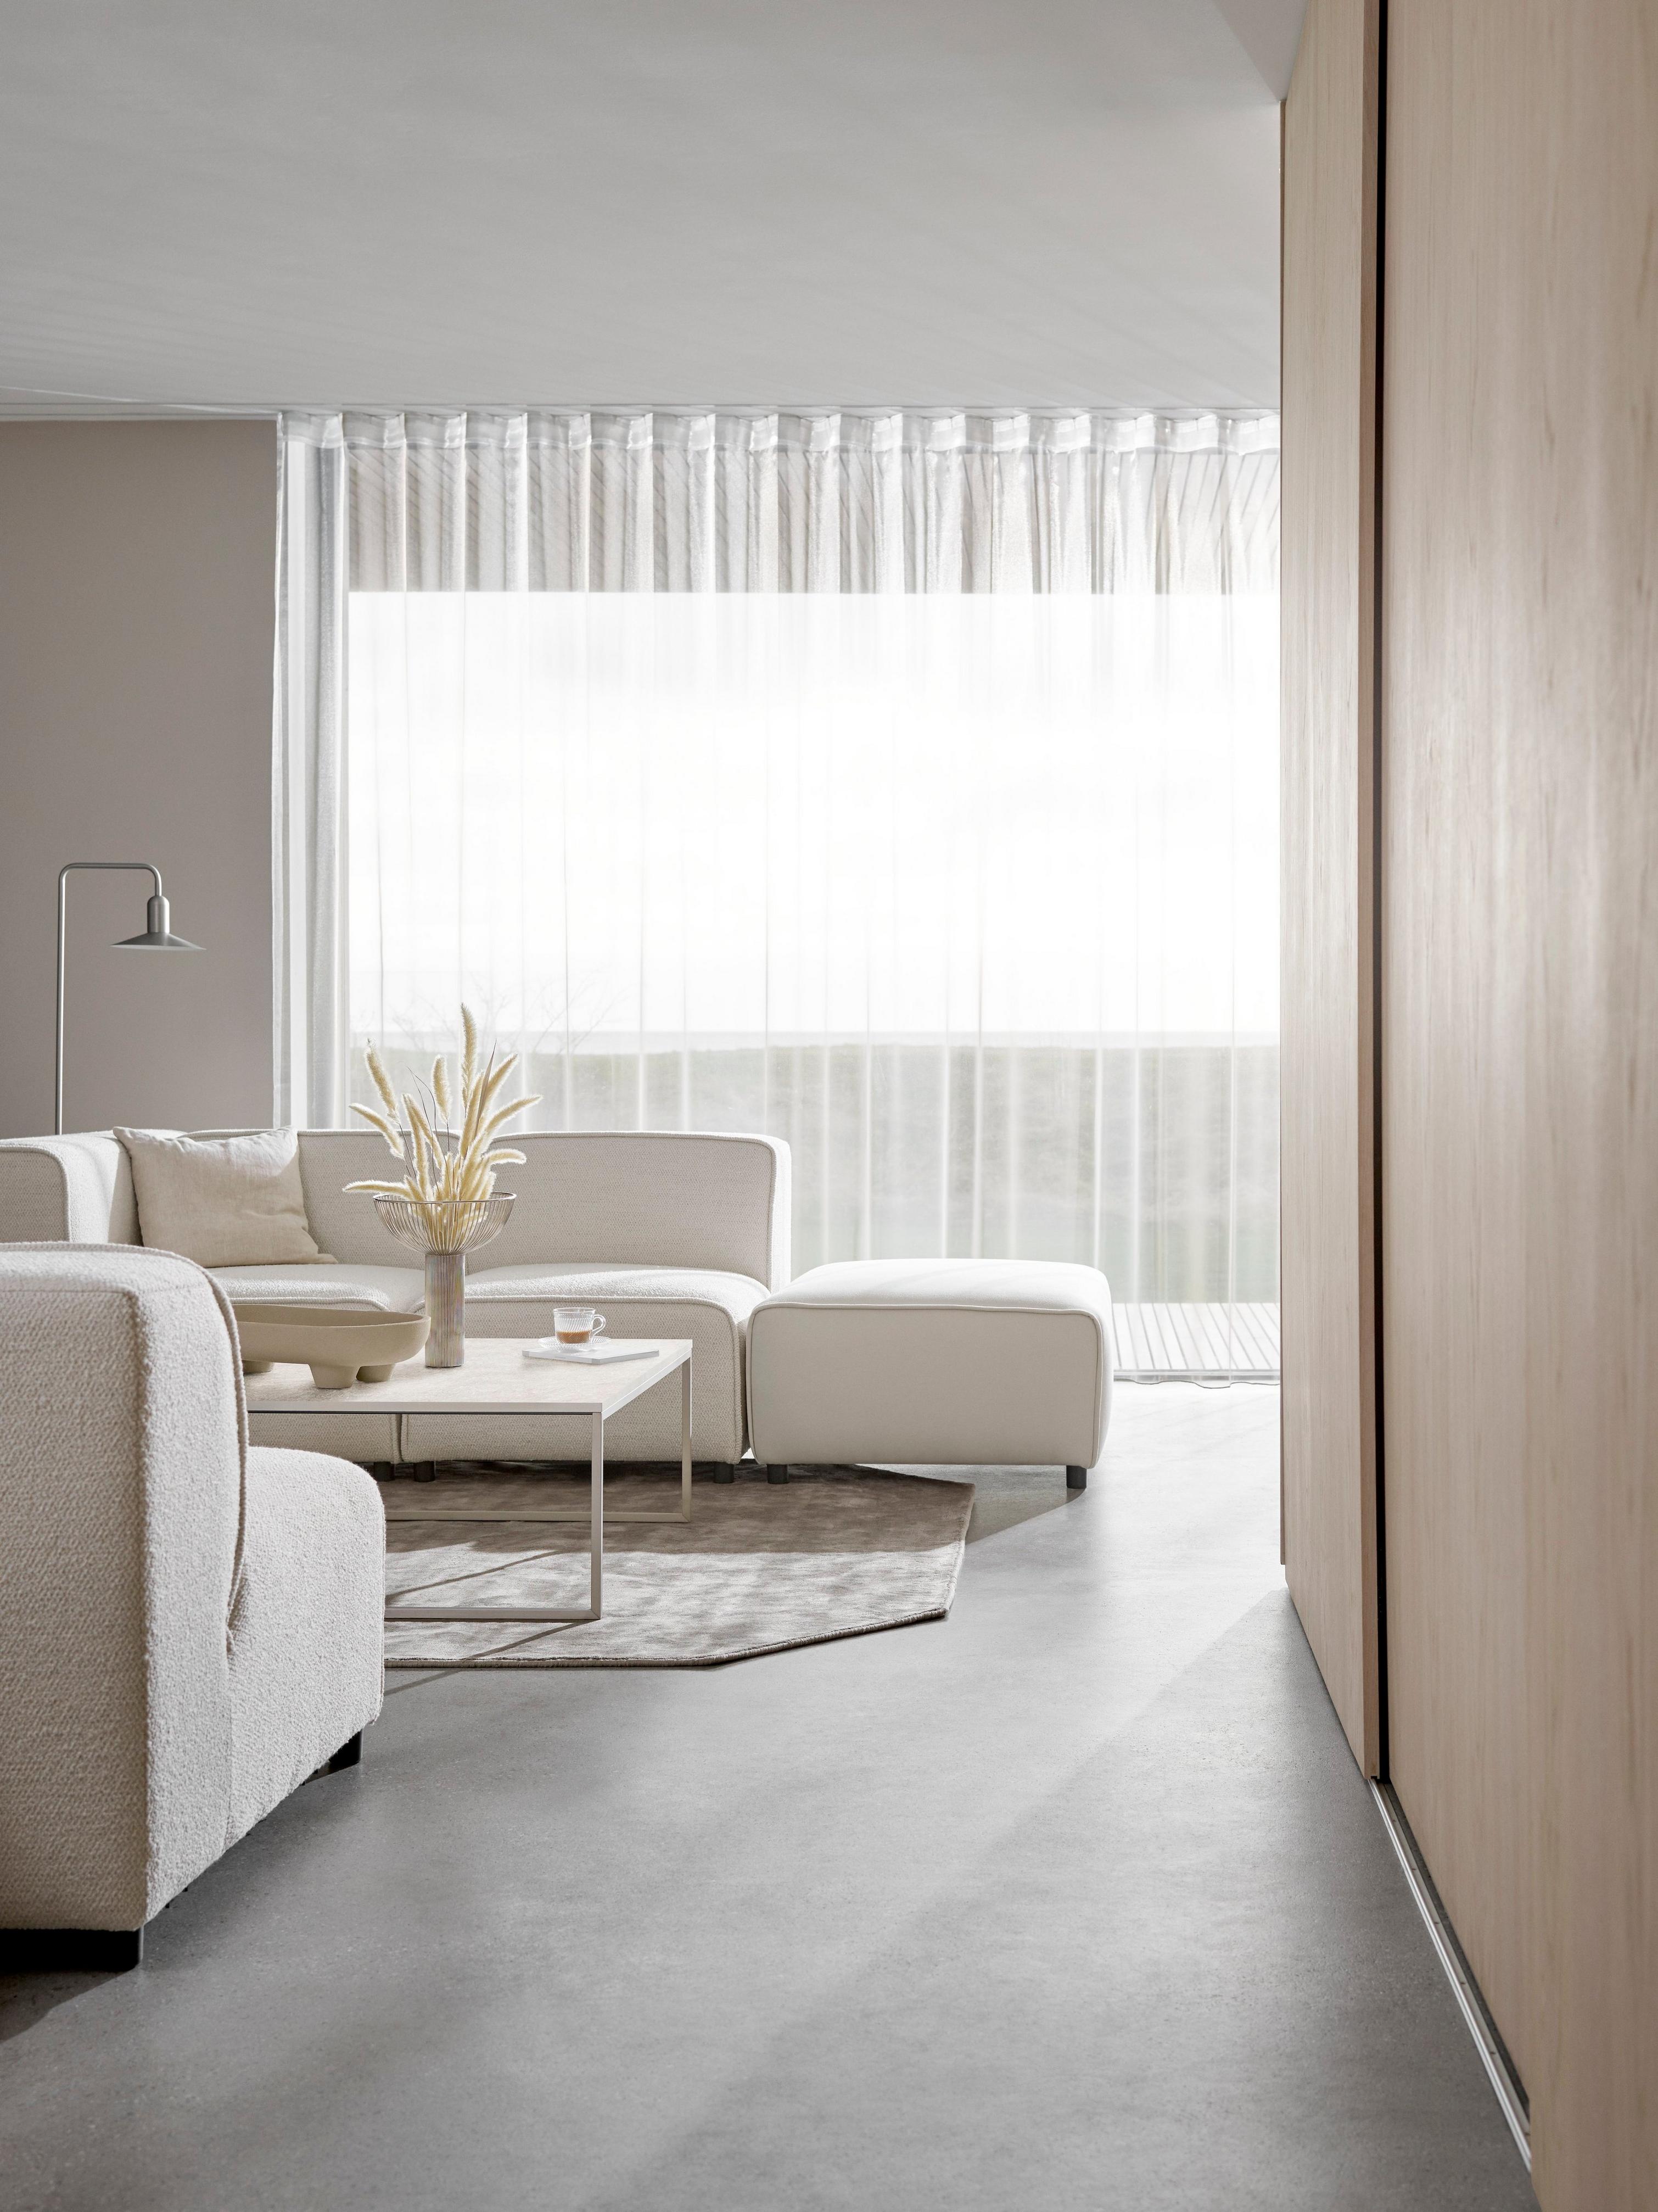 Pohovka Carmo v krémové barvě v minimalistickém obývacím pokoji se světlem rozptýleným záclonami.